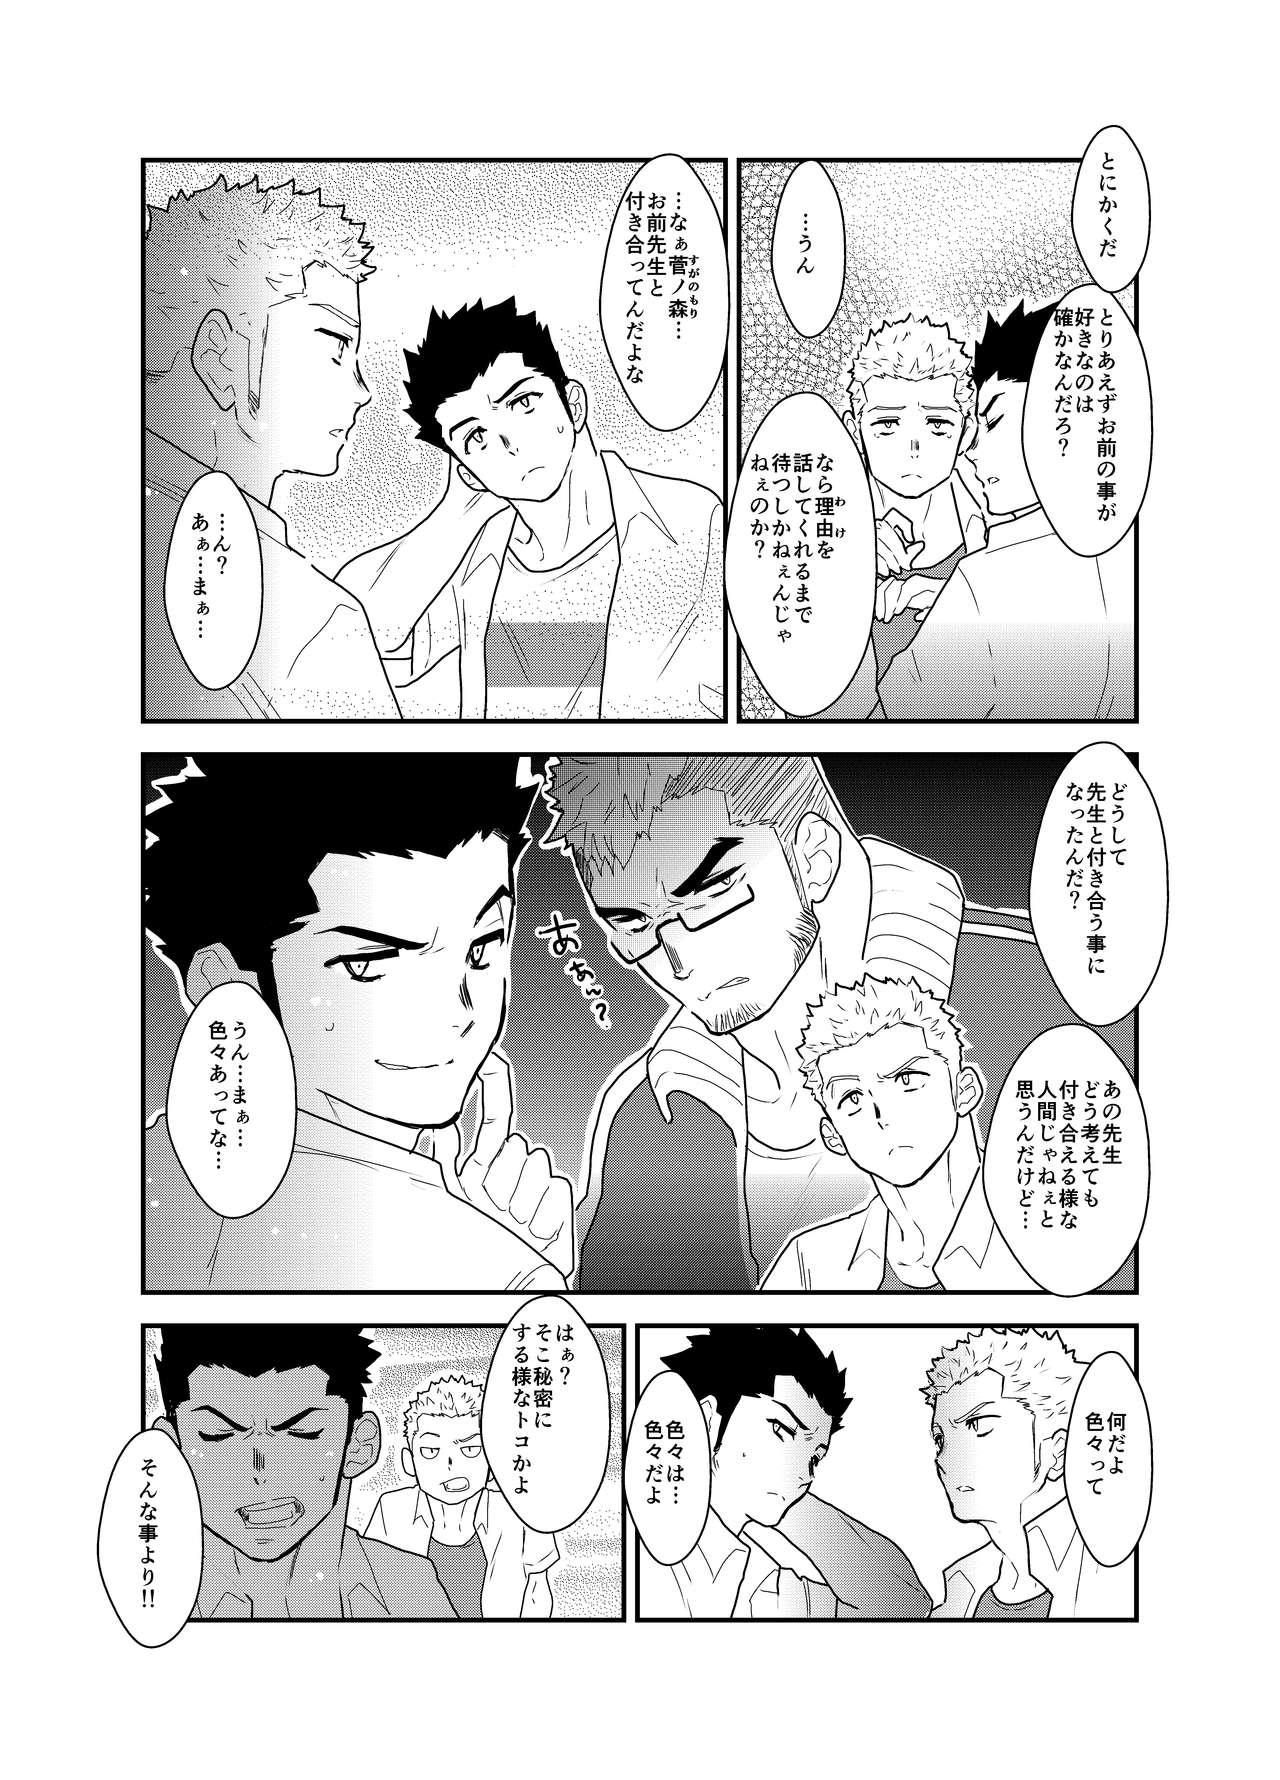 Sexteen Aitsu ga Ore to Tsukiaenai Riyuu ga Mattaku Wakaranai no desu ga. - Original Twinks - Page 6